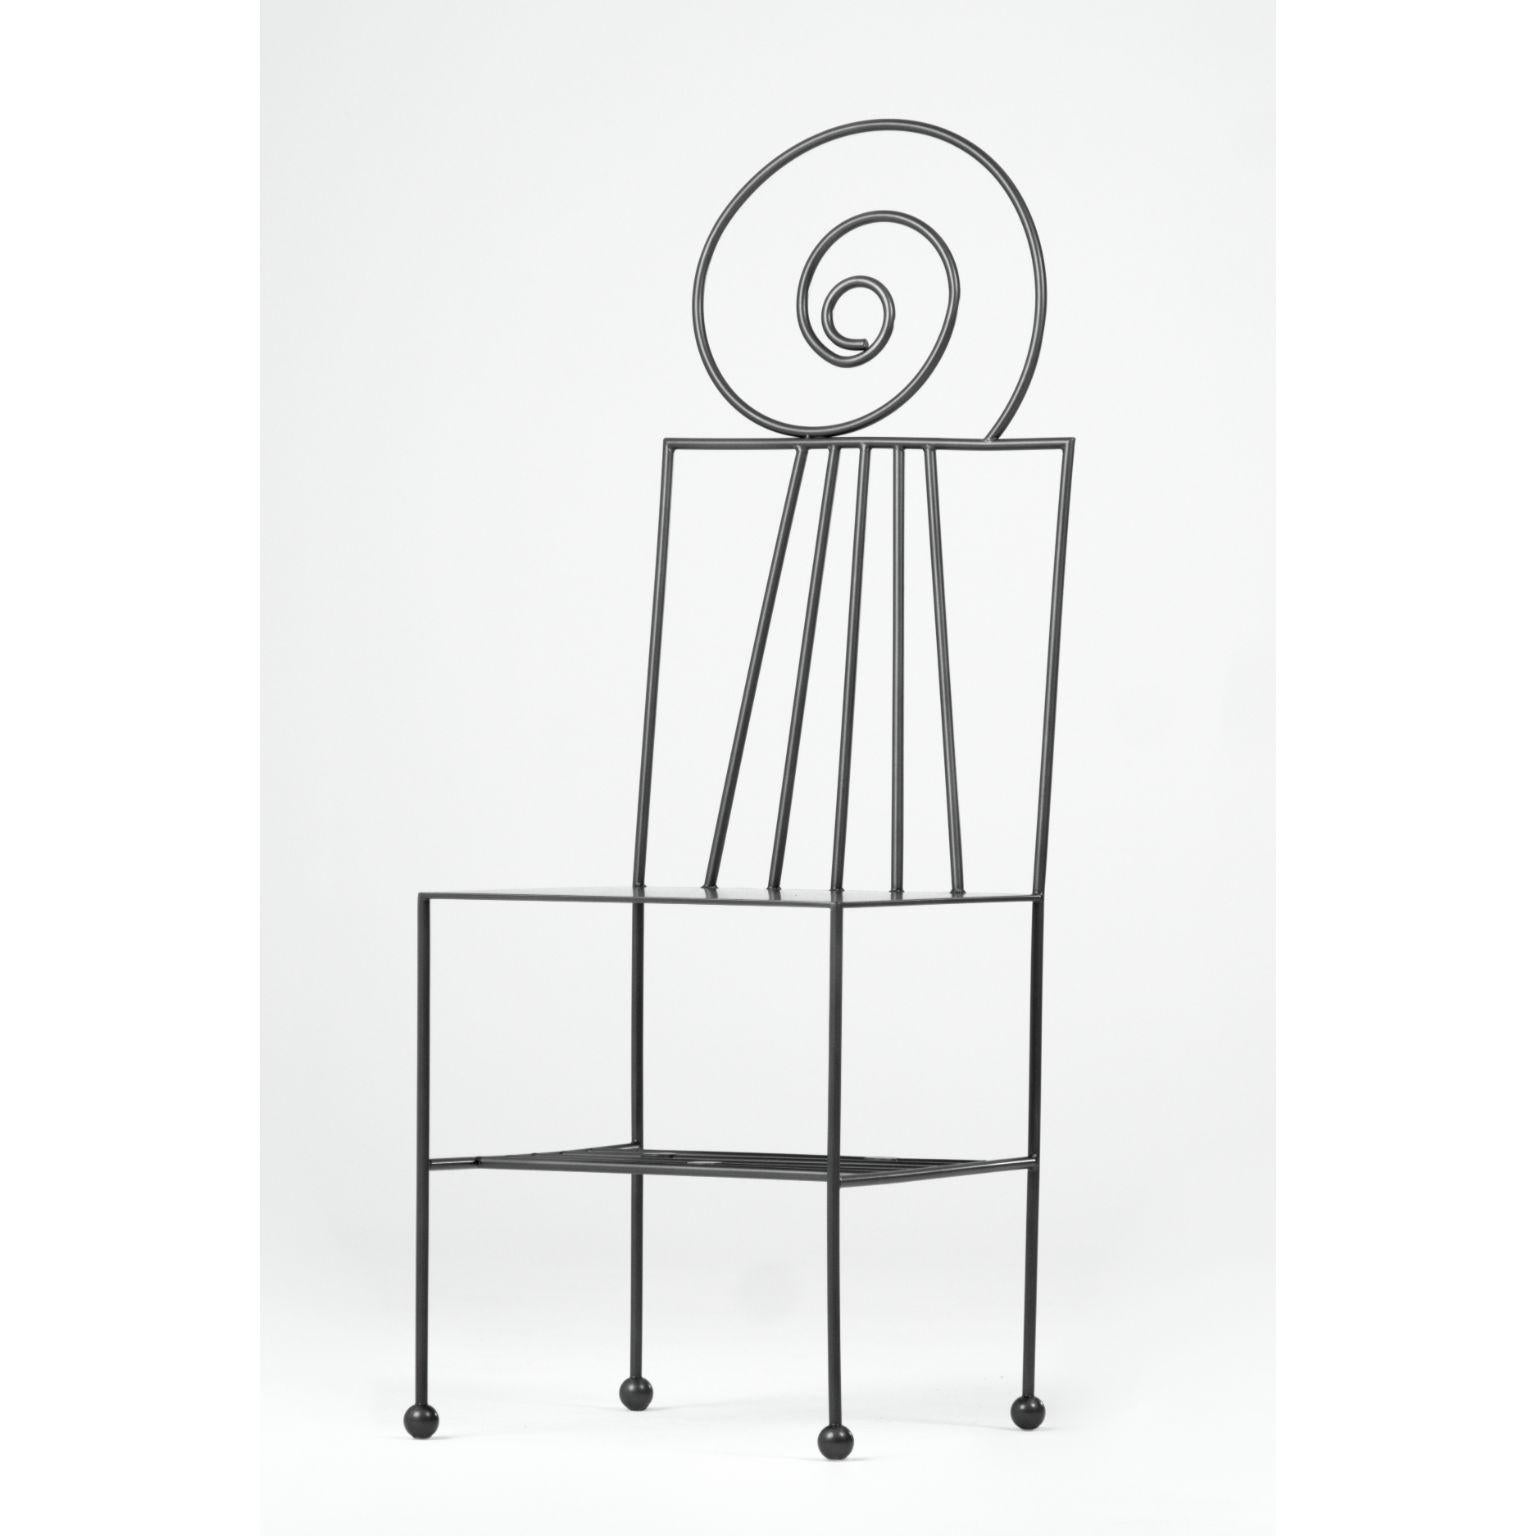 Melody-Stuhl von Qvinto Studio
Einzigartiges Stück. Handgefertigt.
Abmessungen: T 40 x B 40 x H 114 cm.
MATERIAL: rostfreier Stahl.

Die Melodie kann als eine 